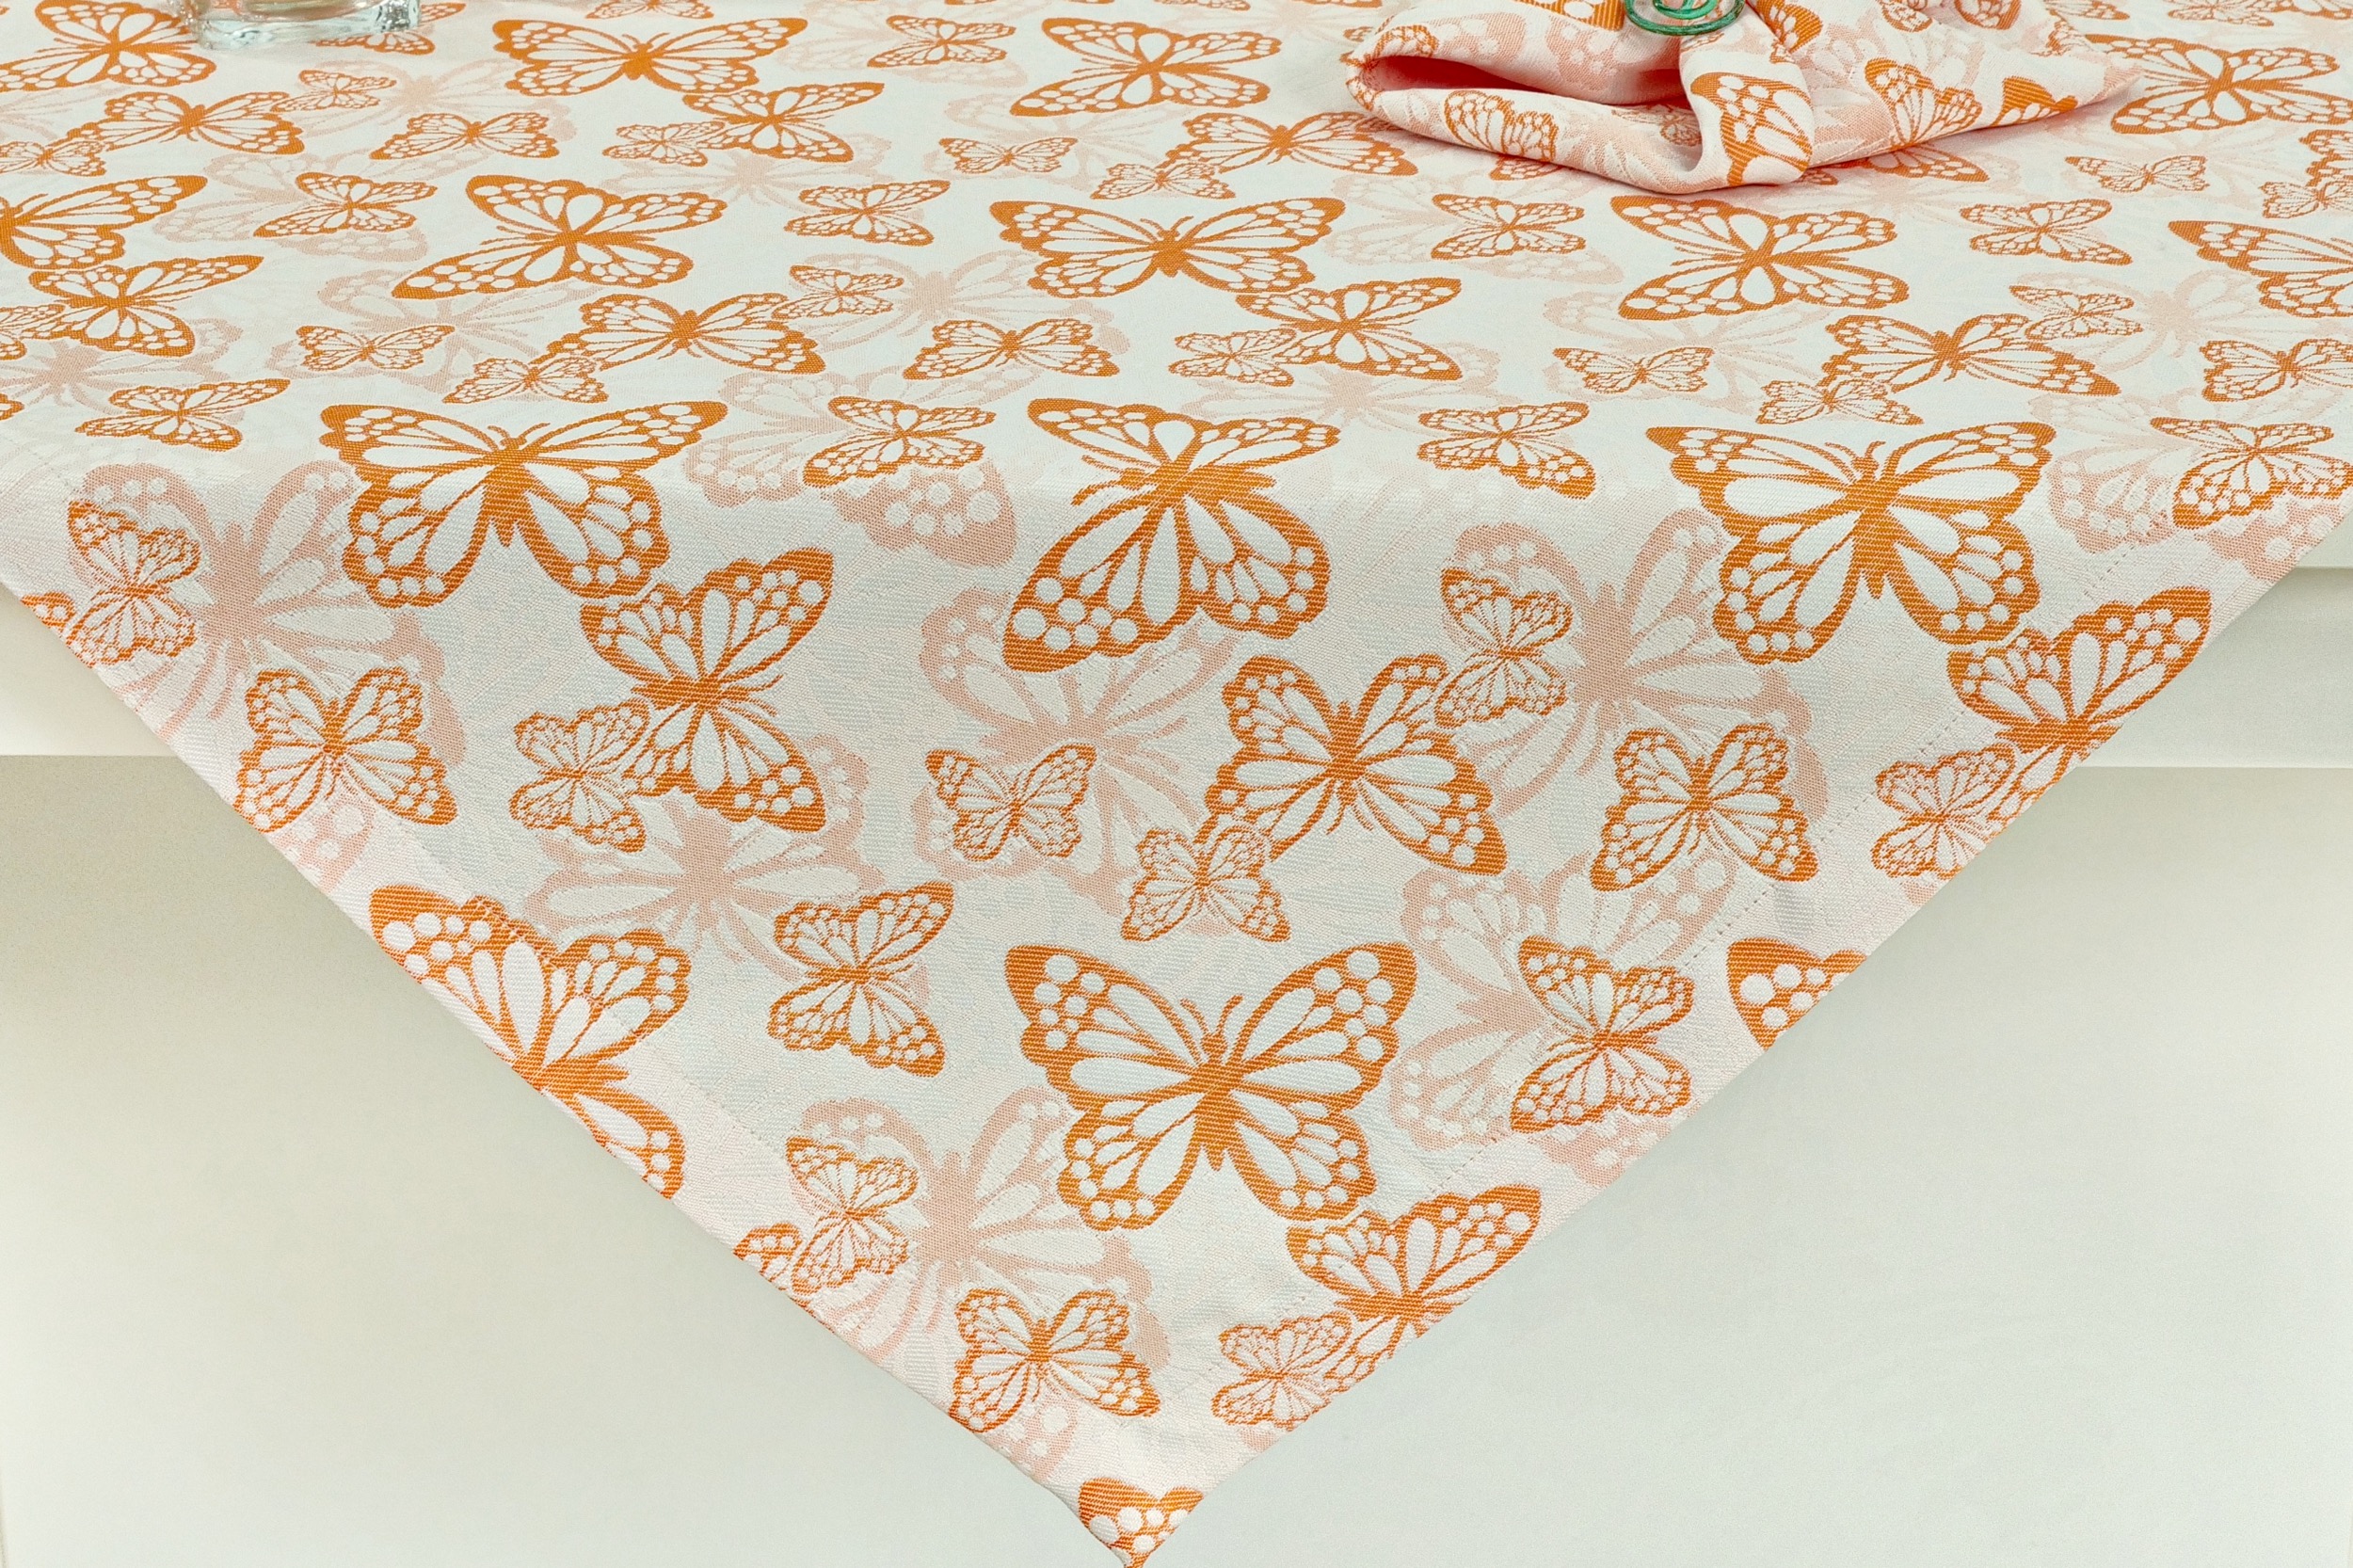 Fleckgeschützte Tischdecke Weiß Orange Muster Springtime ab 80x80 cm - 160x160 cm QUADRATISCH